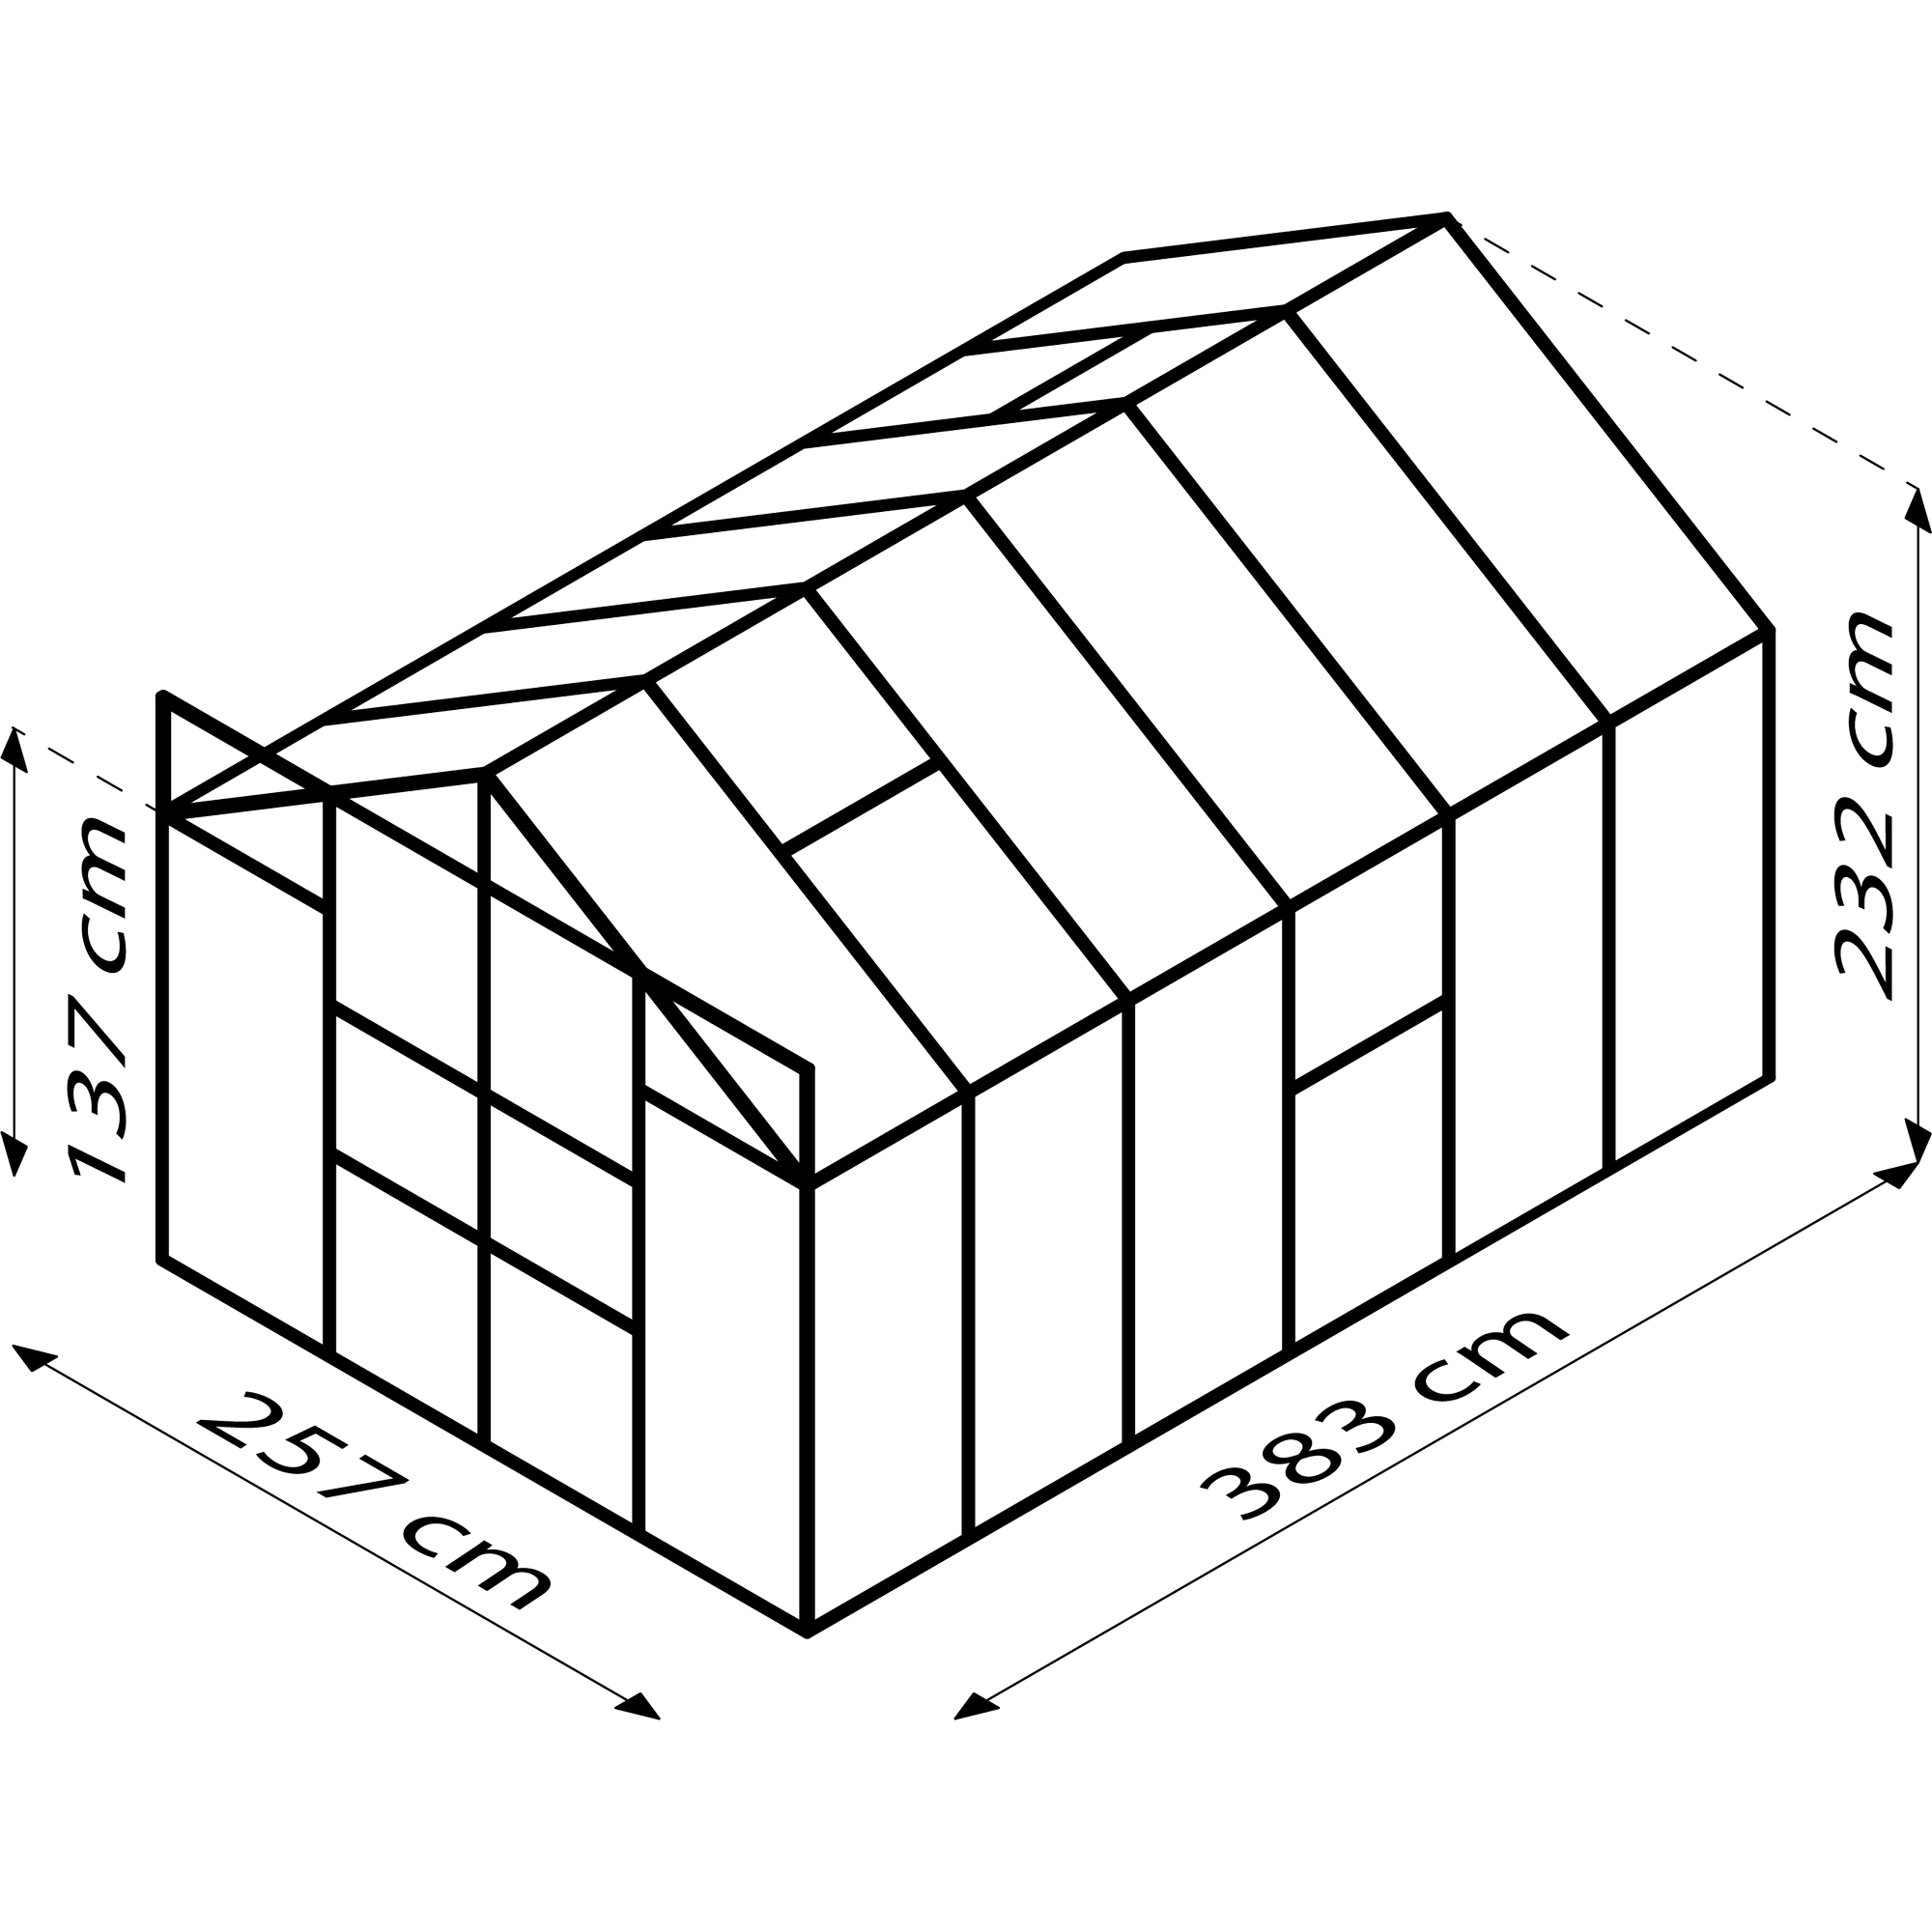 Gewächshaus 'Meridian 2 9900' 9,9 m² 254,4 x 378,8 cm 6 mm Hohlkammerplatten schwarz + product picture